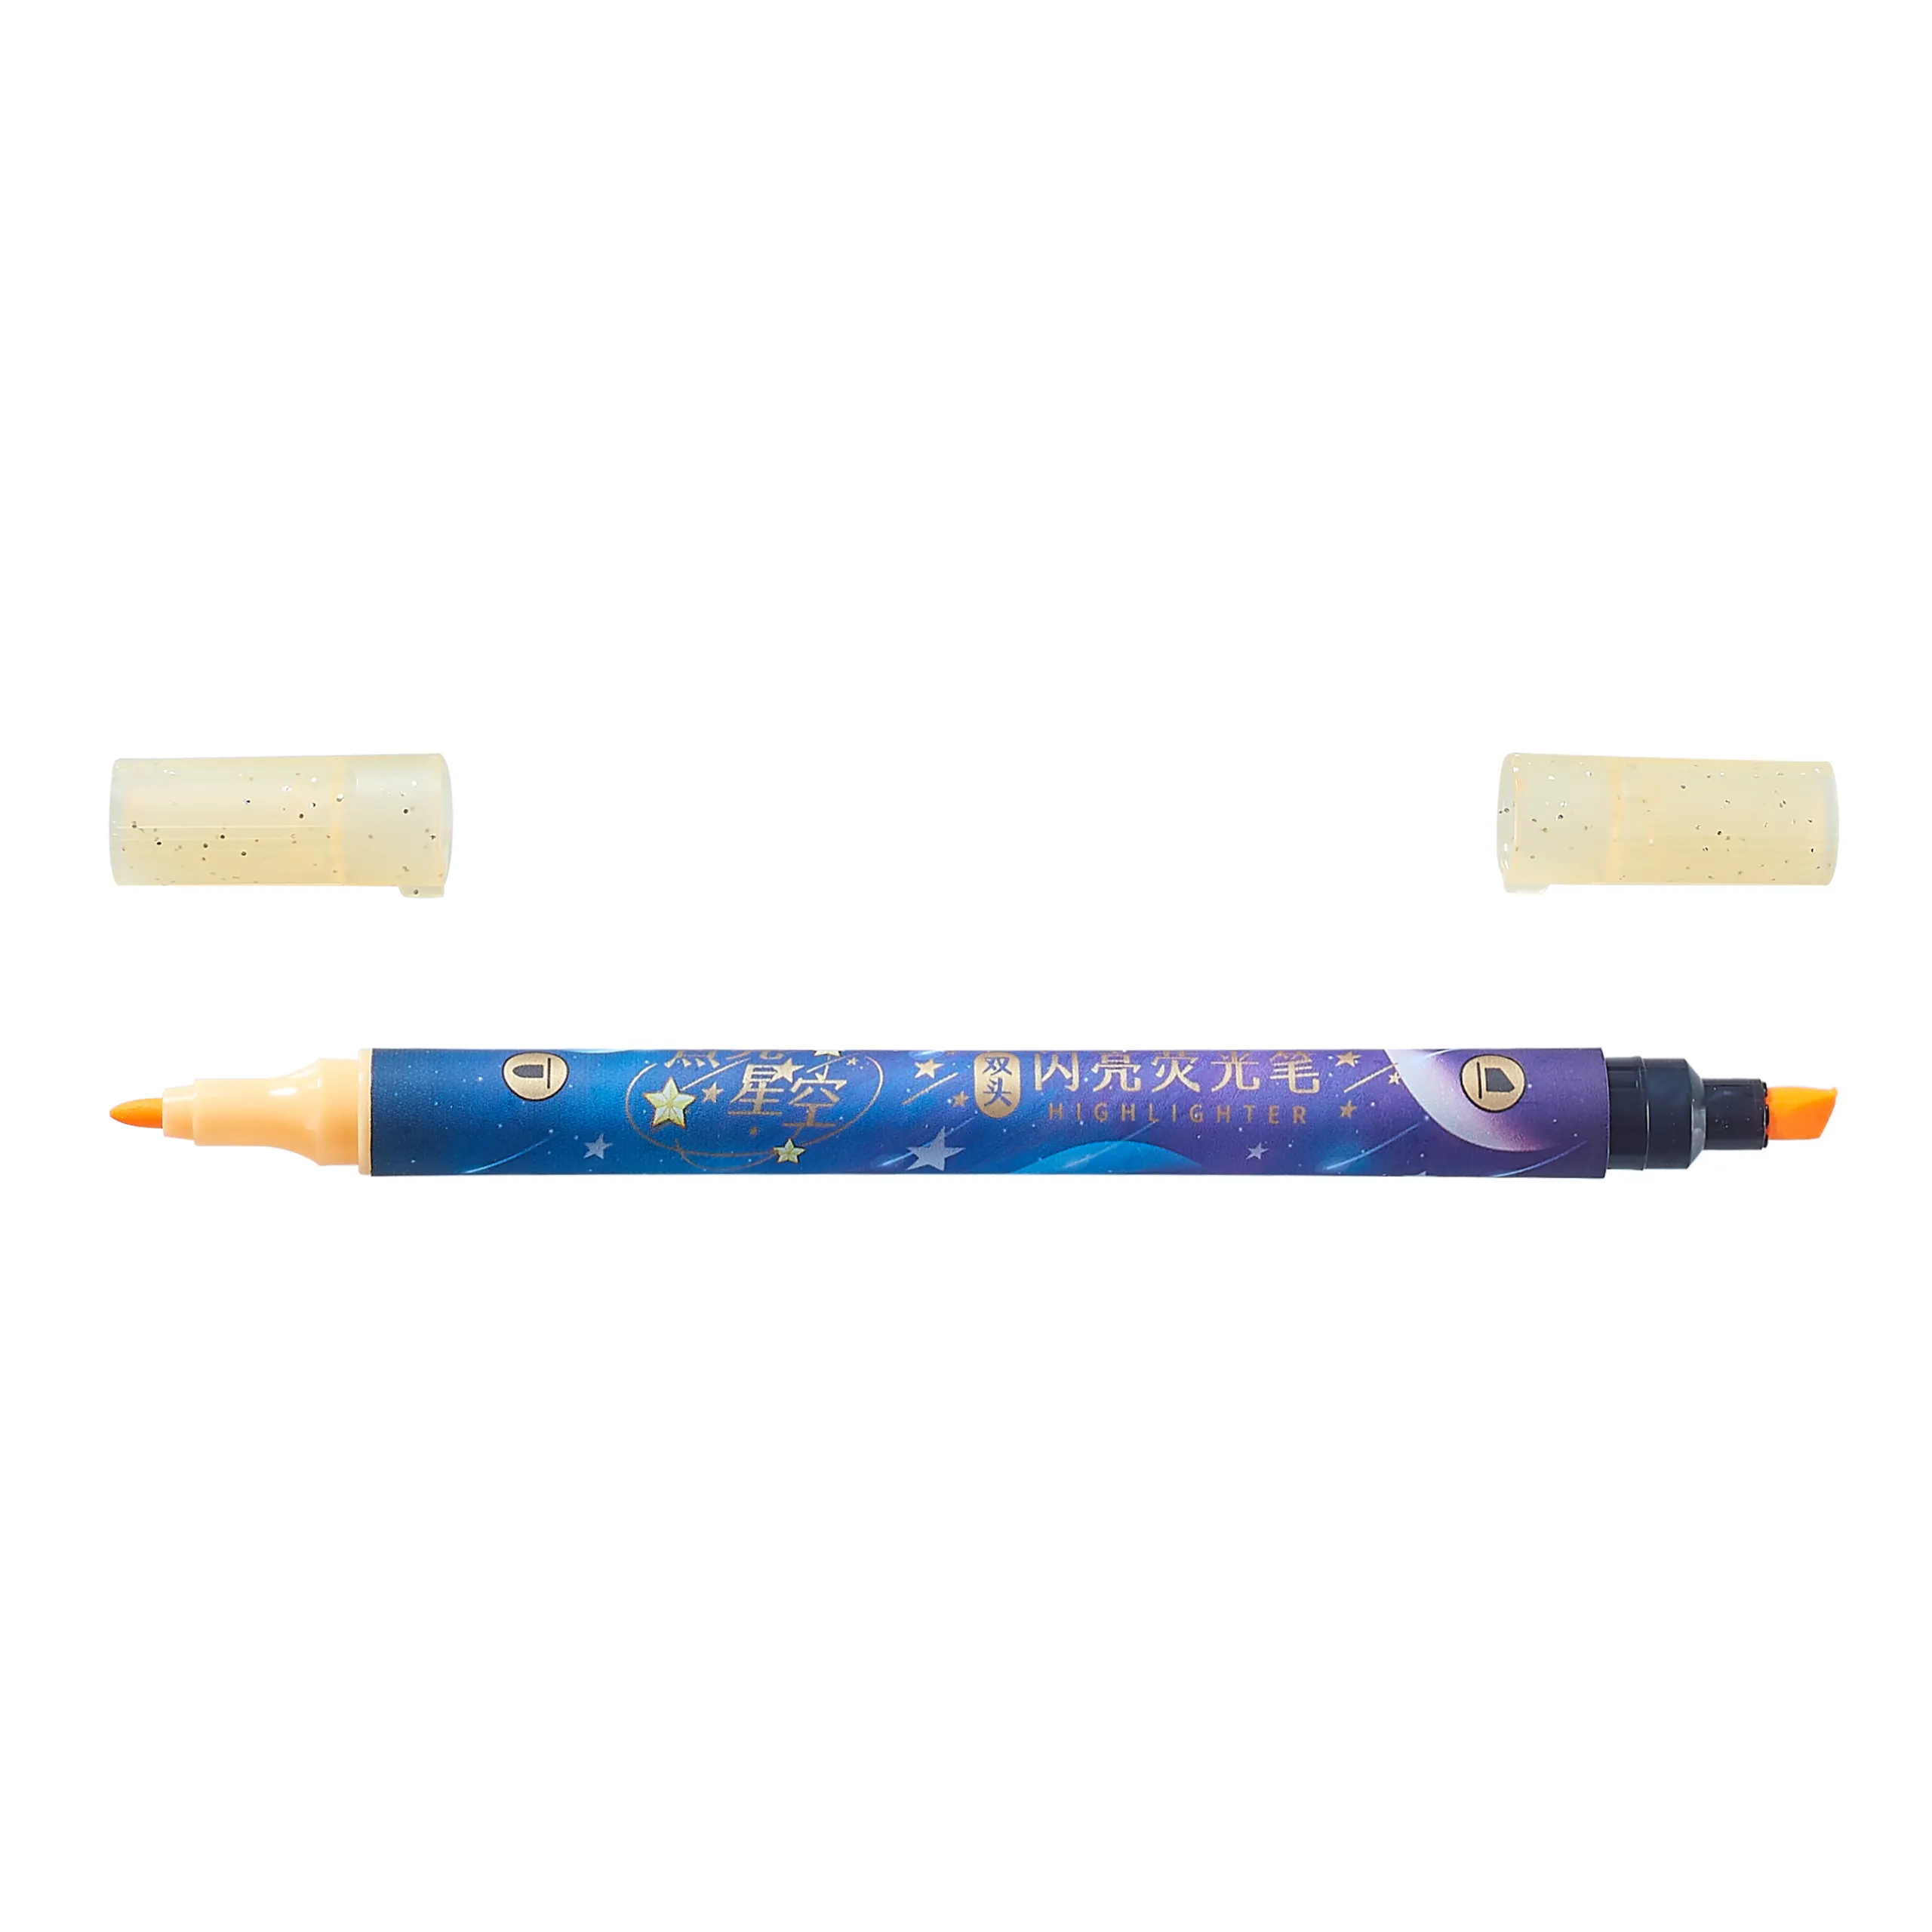 मिश्रित कैंडी रंगों #2078 लाइट में सौंदर्यपूर्ण प्यारा पेस्टल हाइलाइटर्स ओब्लिक छेनी और फेल्ट टिप फ्लोरोसेंस पेन का 6-पीसी सेट